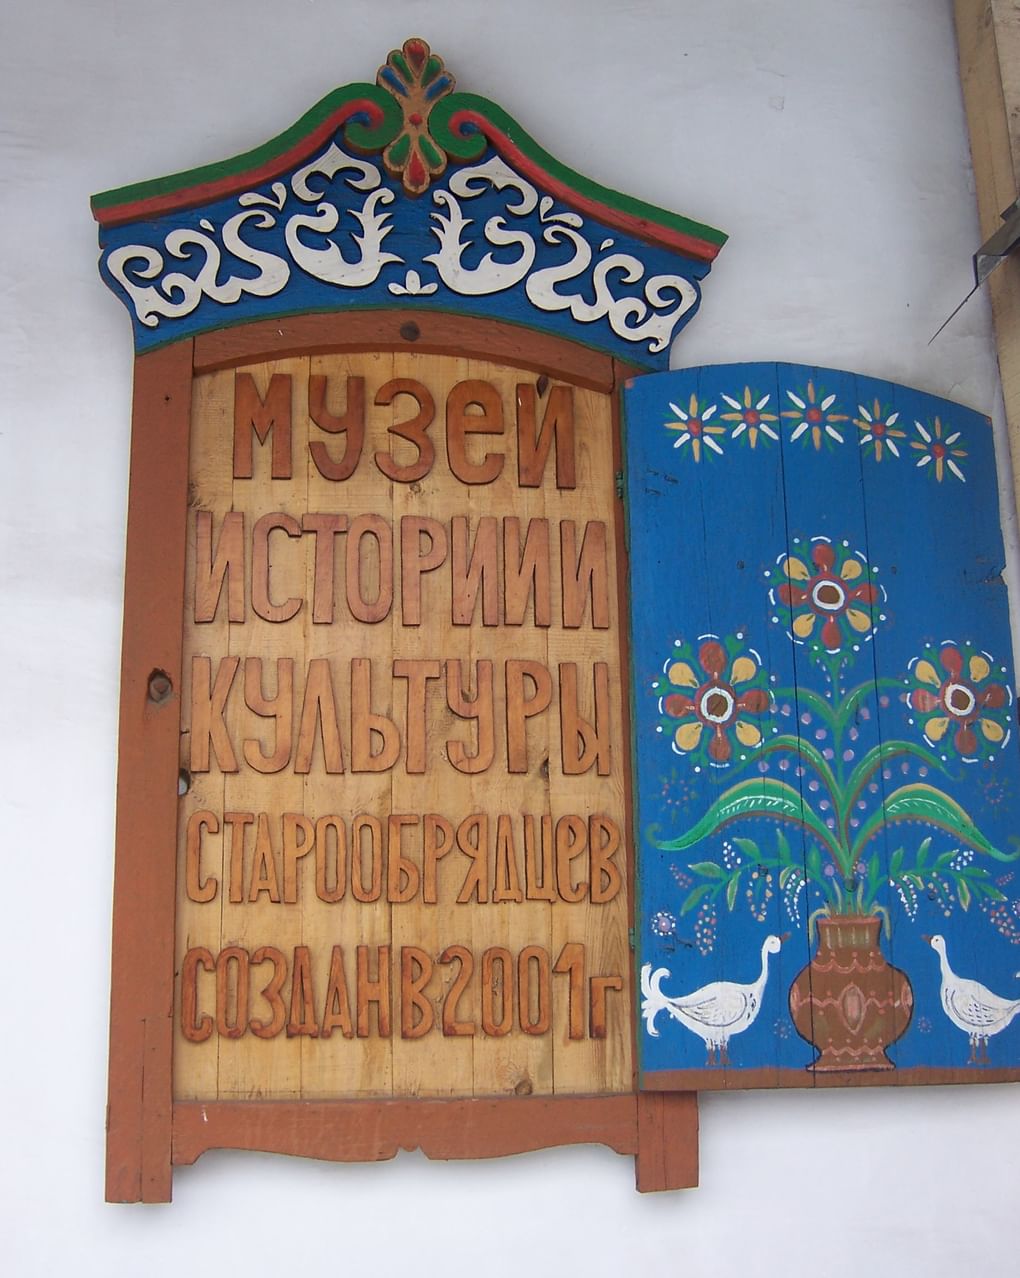 Табличка Музея истории и культуры старообрядцев в селе Тарбагатай. Фотография из личного архива